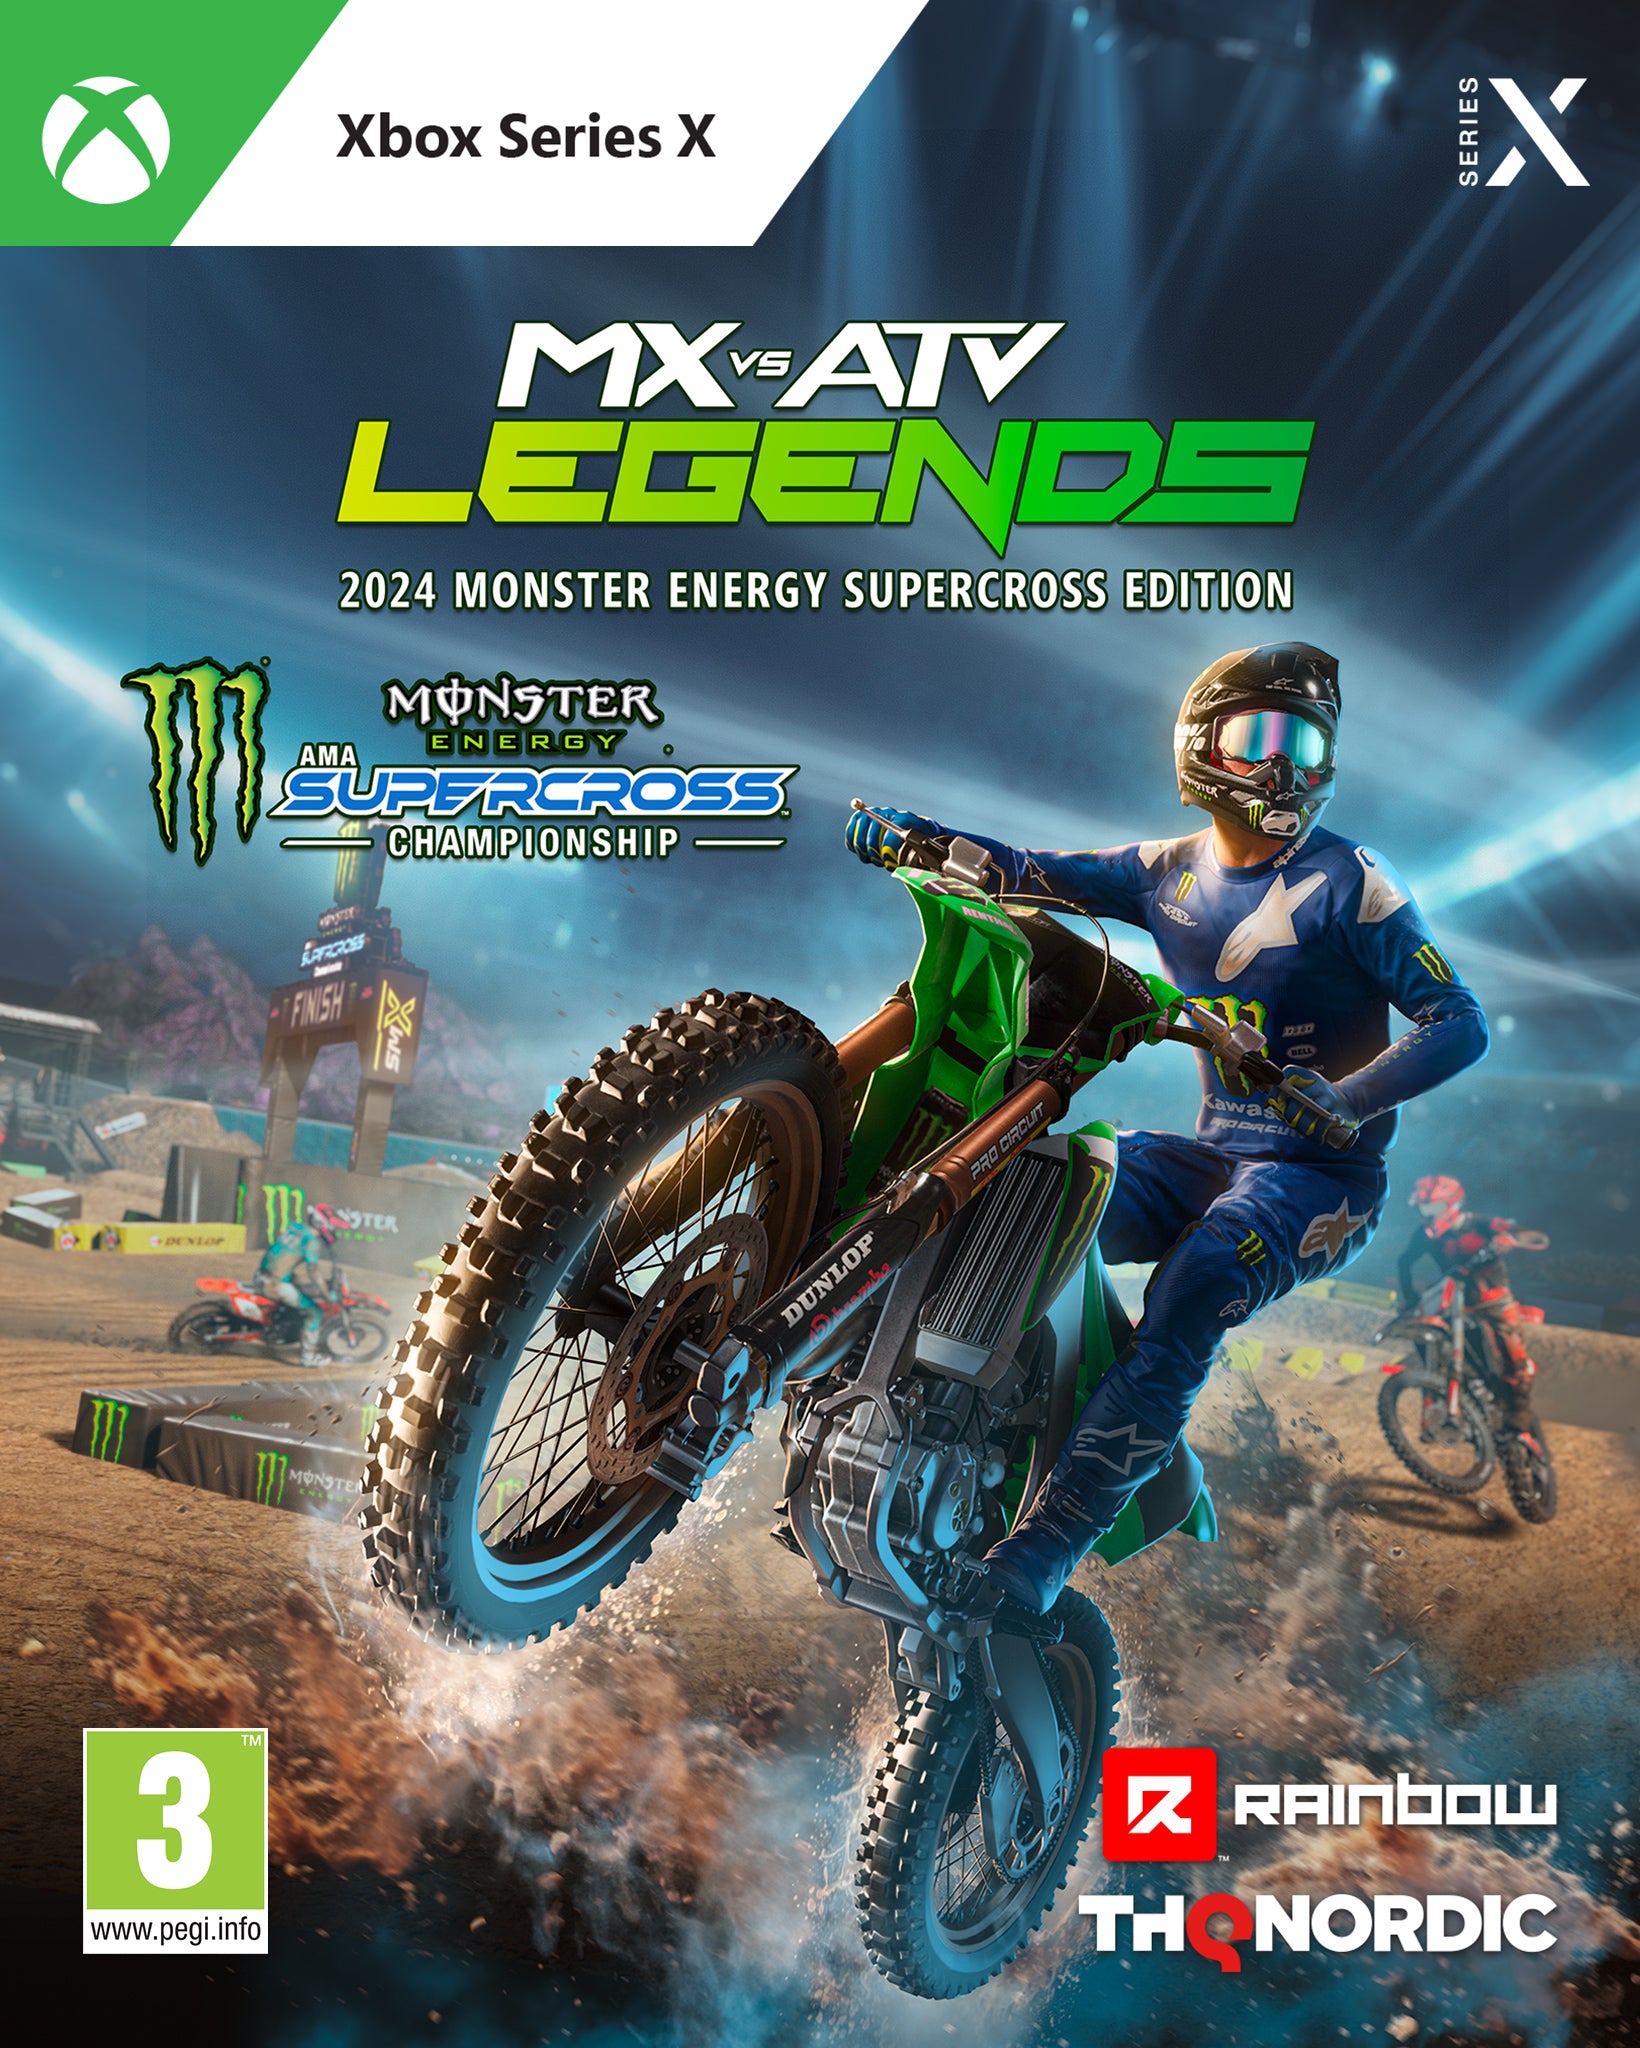 Xbox Series X MX vs ATV Legends 2024 Monster Energy Supercross Edition - Disponibile in 2/3 giorni lavorativi THQ NORDIC